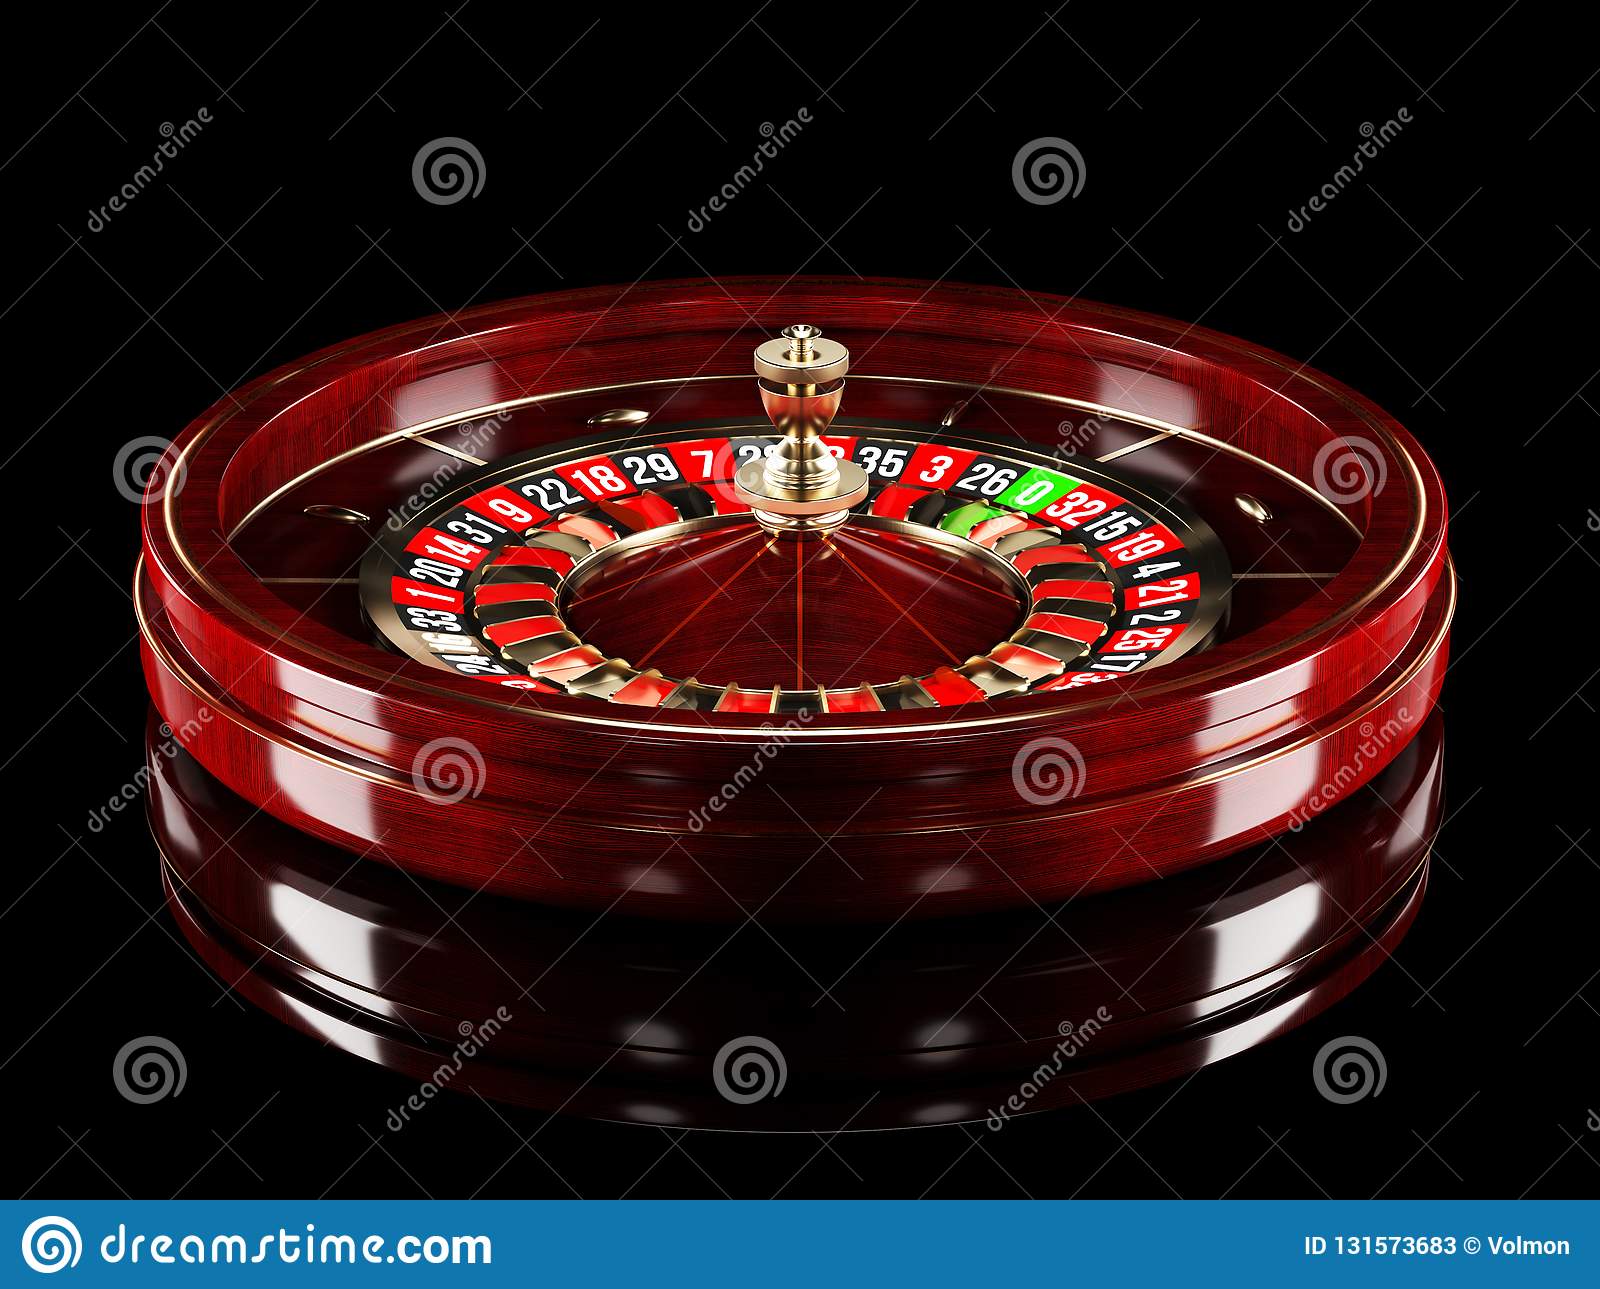 Обзор фортуна казино